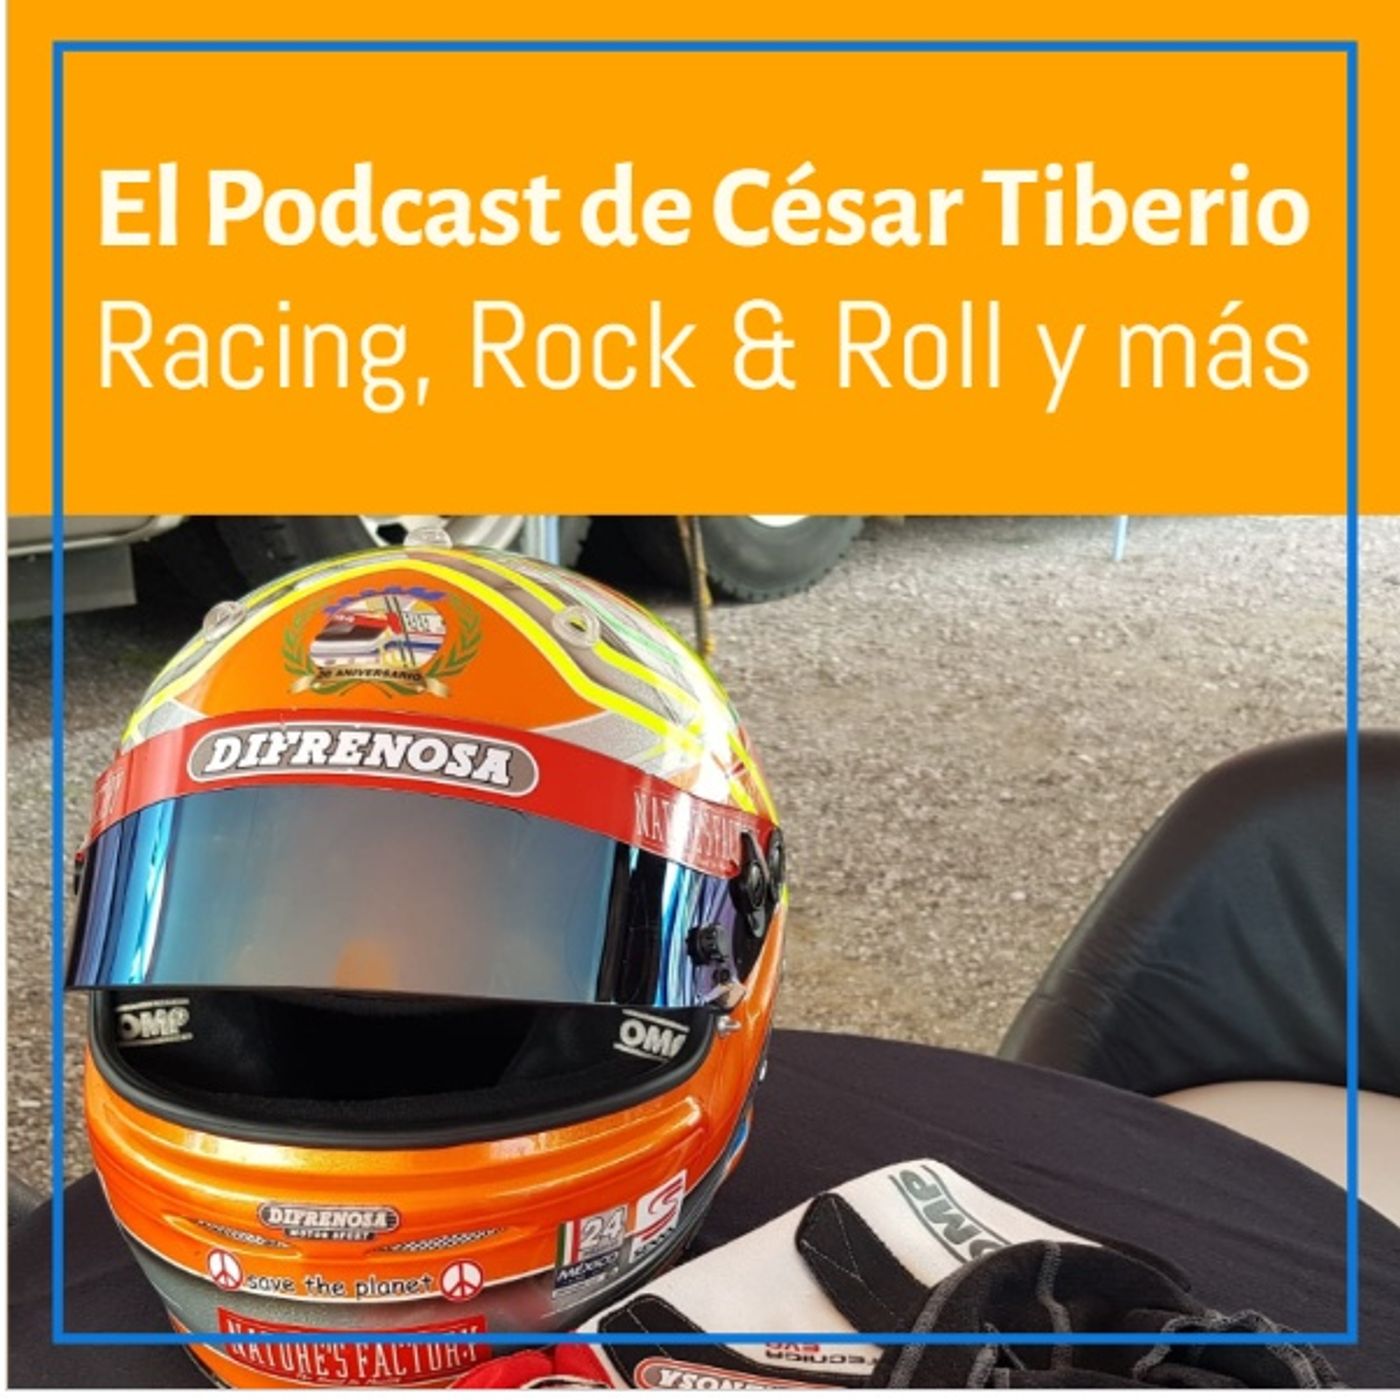 El Podcast de César Tiberio